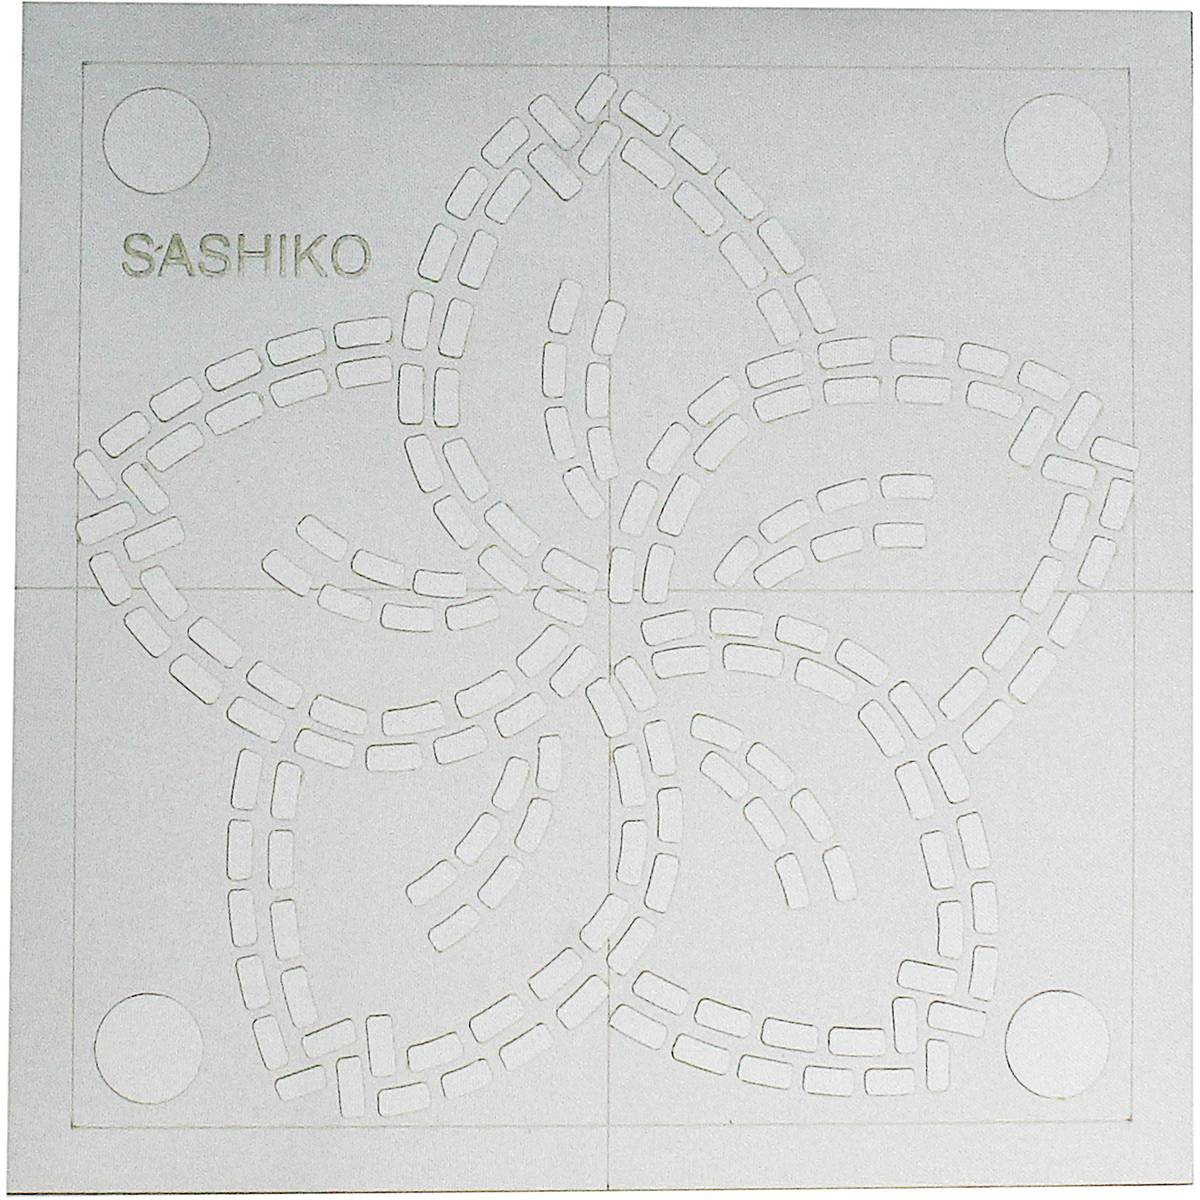 Sashiko Embroidery Patterns Free Sew Easy Sashiko Sakura Cherry Blossom Template